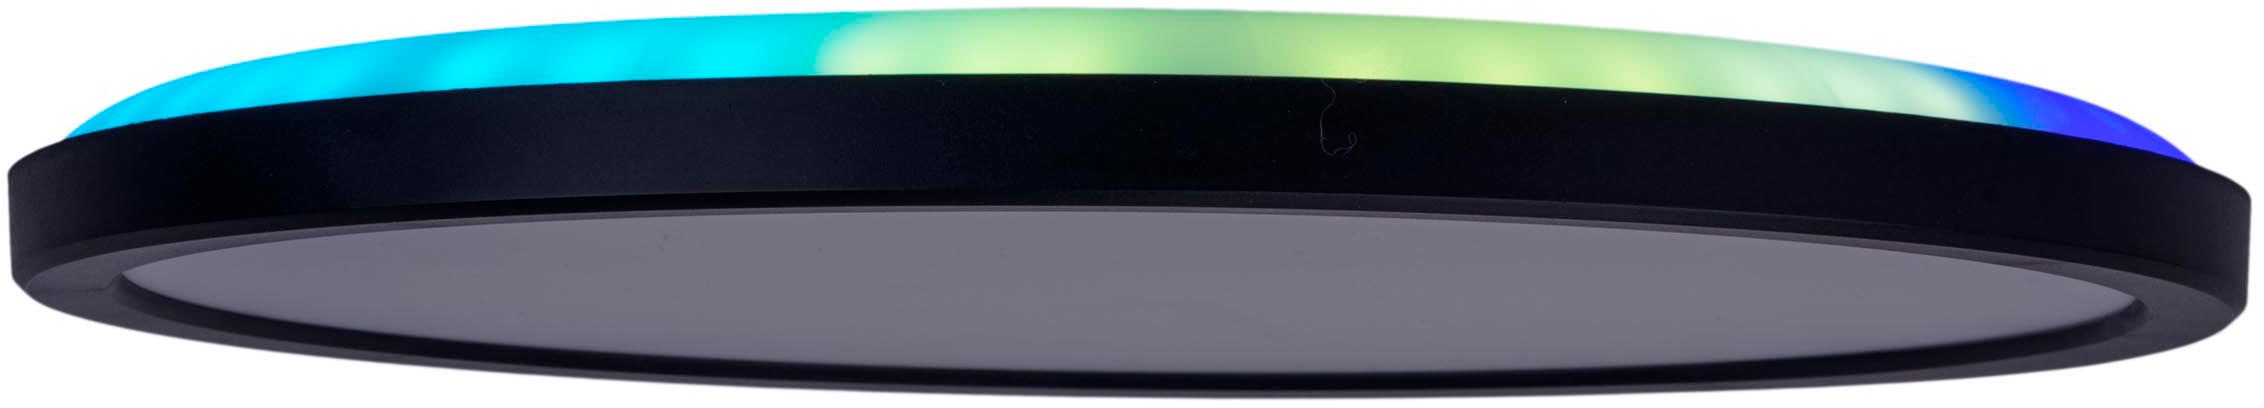 näve Deckenleuchte »LED "CARLO" mit RGB-Backlight D: 54 cm«, Dimmbar mit Memoryfunktion, Farbwechsler und Nachtlichtfunktion